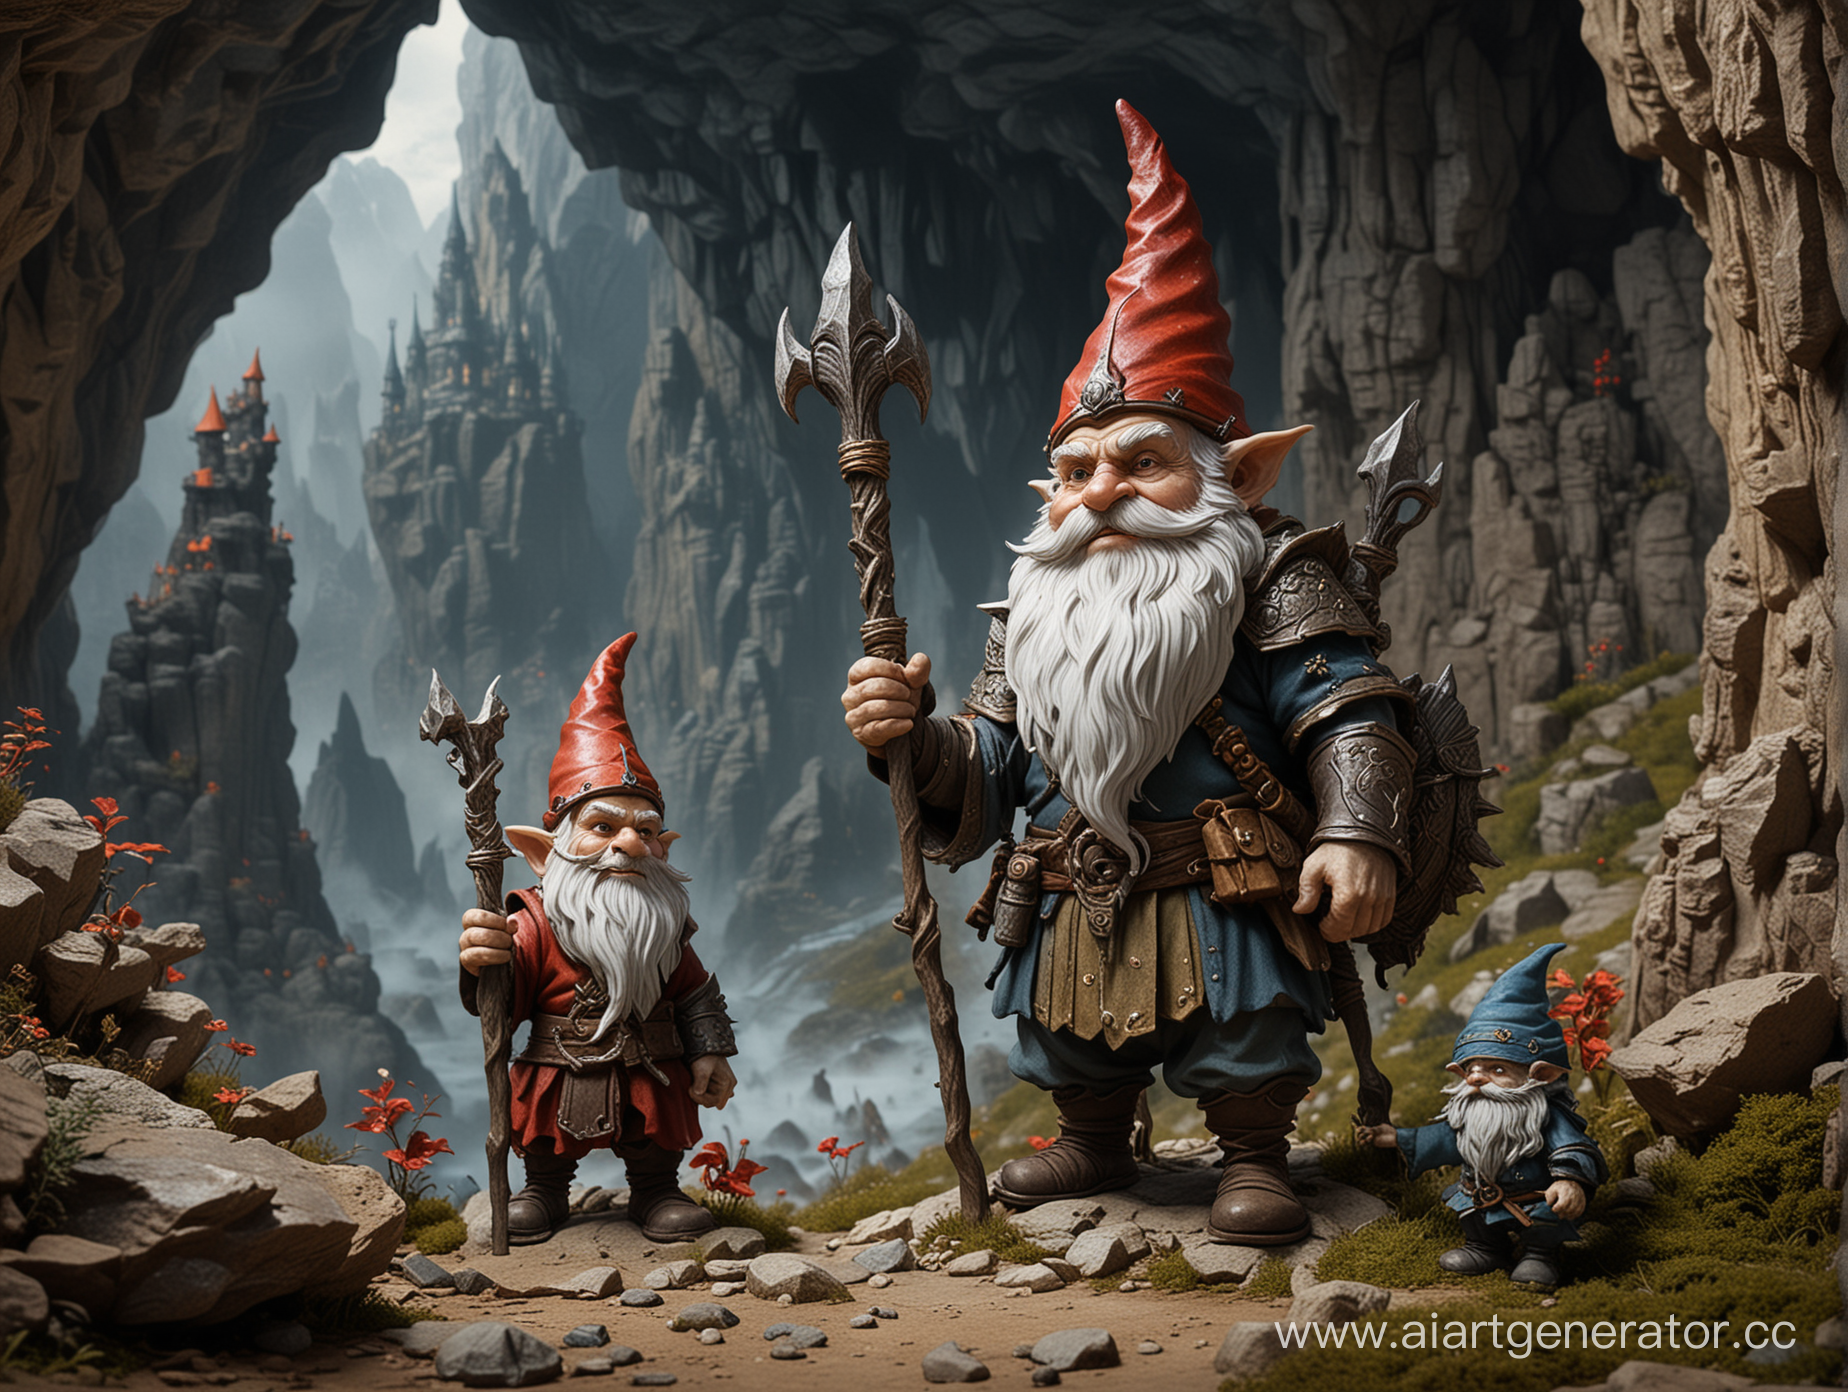 в пещере горного короля пер гюнт маленьких 
гнома стоят рядом с высоким демоном у которого в руках посох
